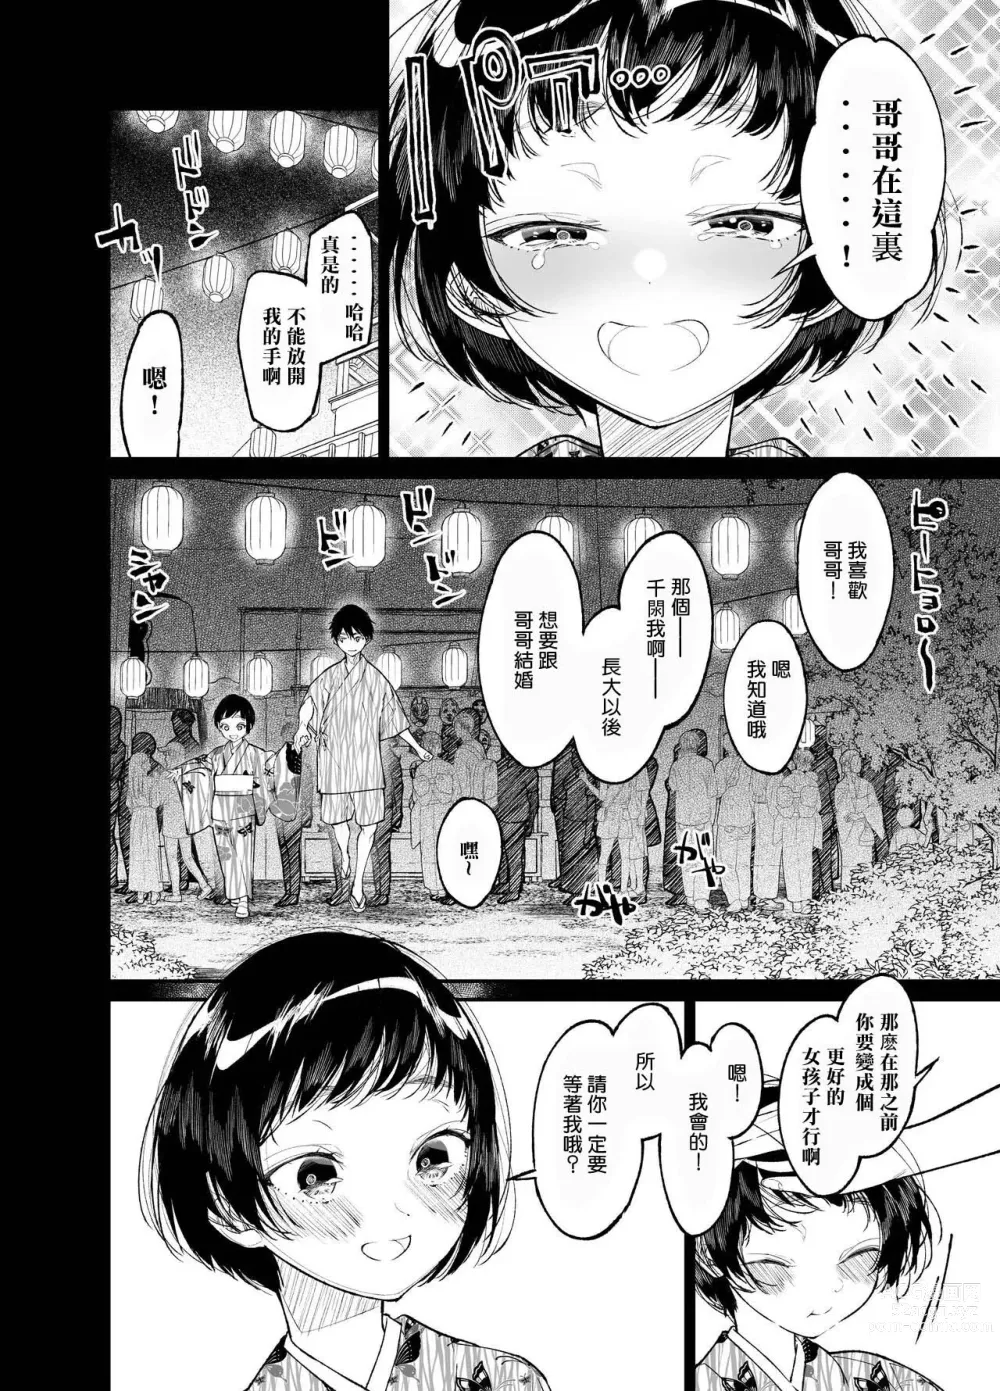 Page 6 of doujinshi Natsu, Shoujo wa Tonde, Hi ni Iru.